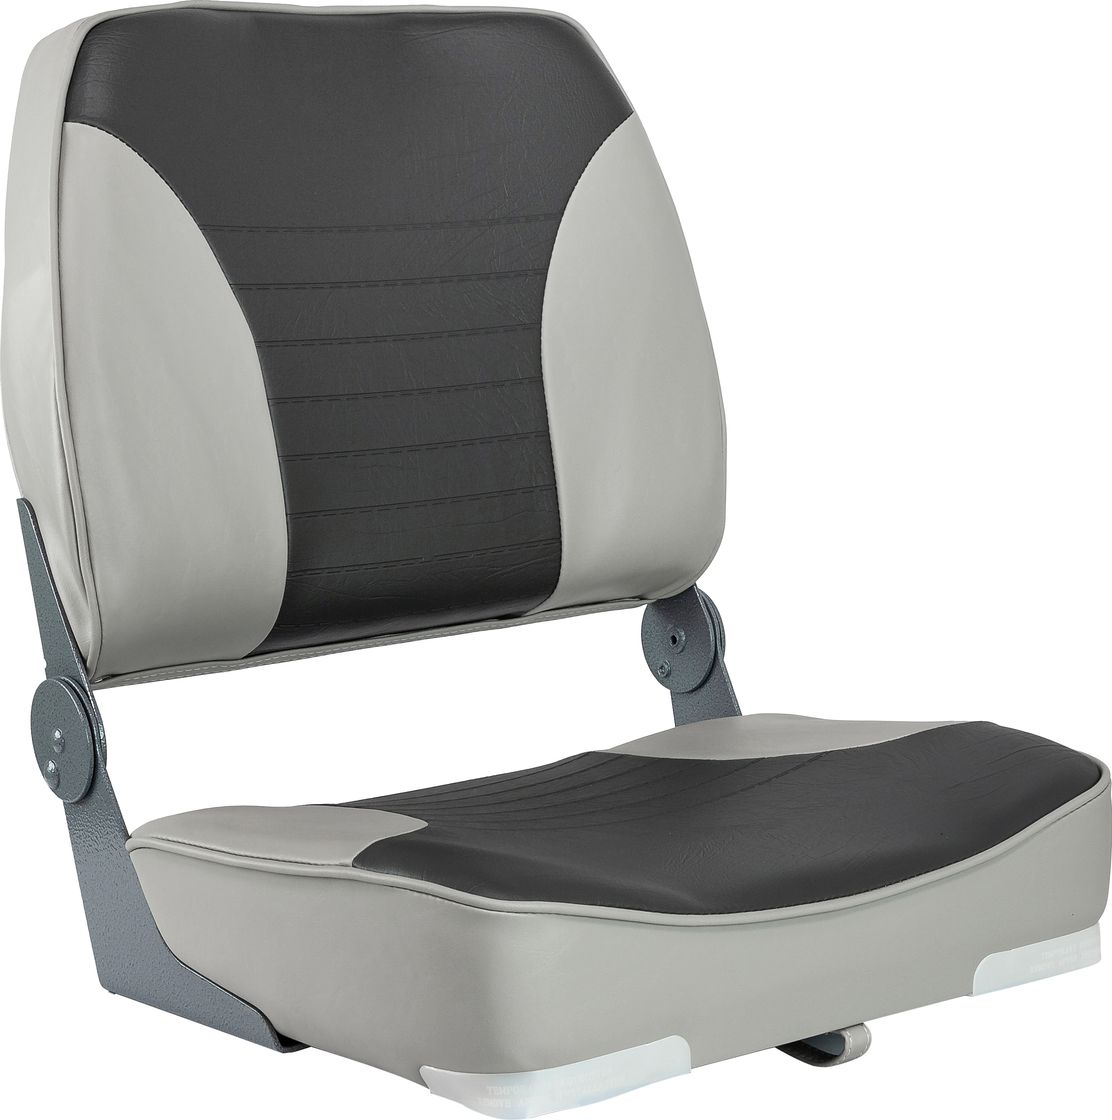 Кресло XXL складное мягкое двухцветное серый/темно-серый 1040693 кресло skipper premium с высокой спинкой серый темно серый 1061067